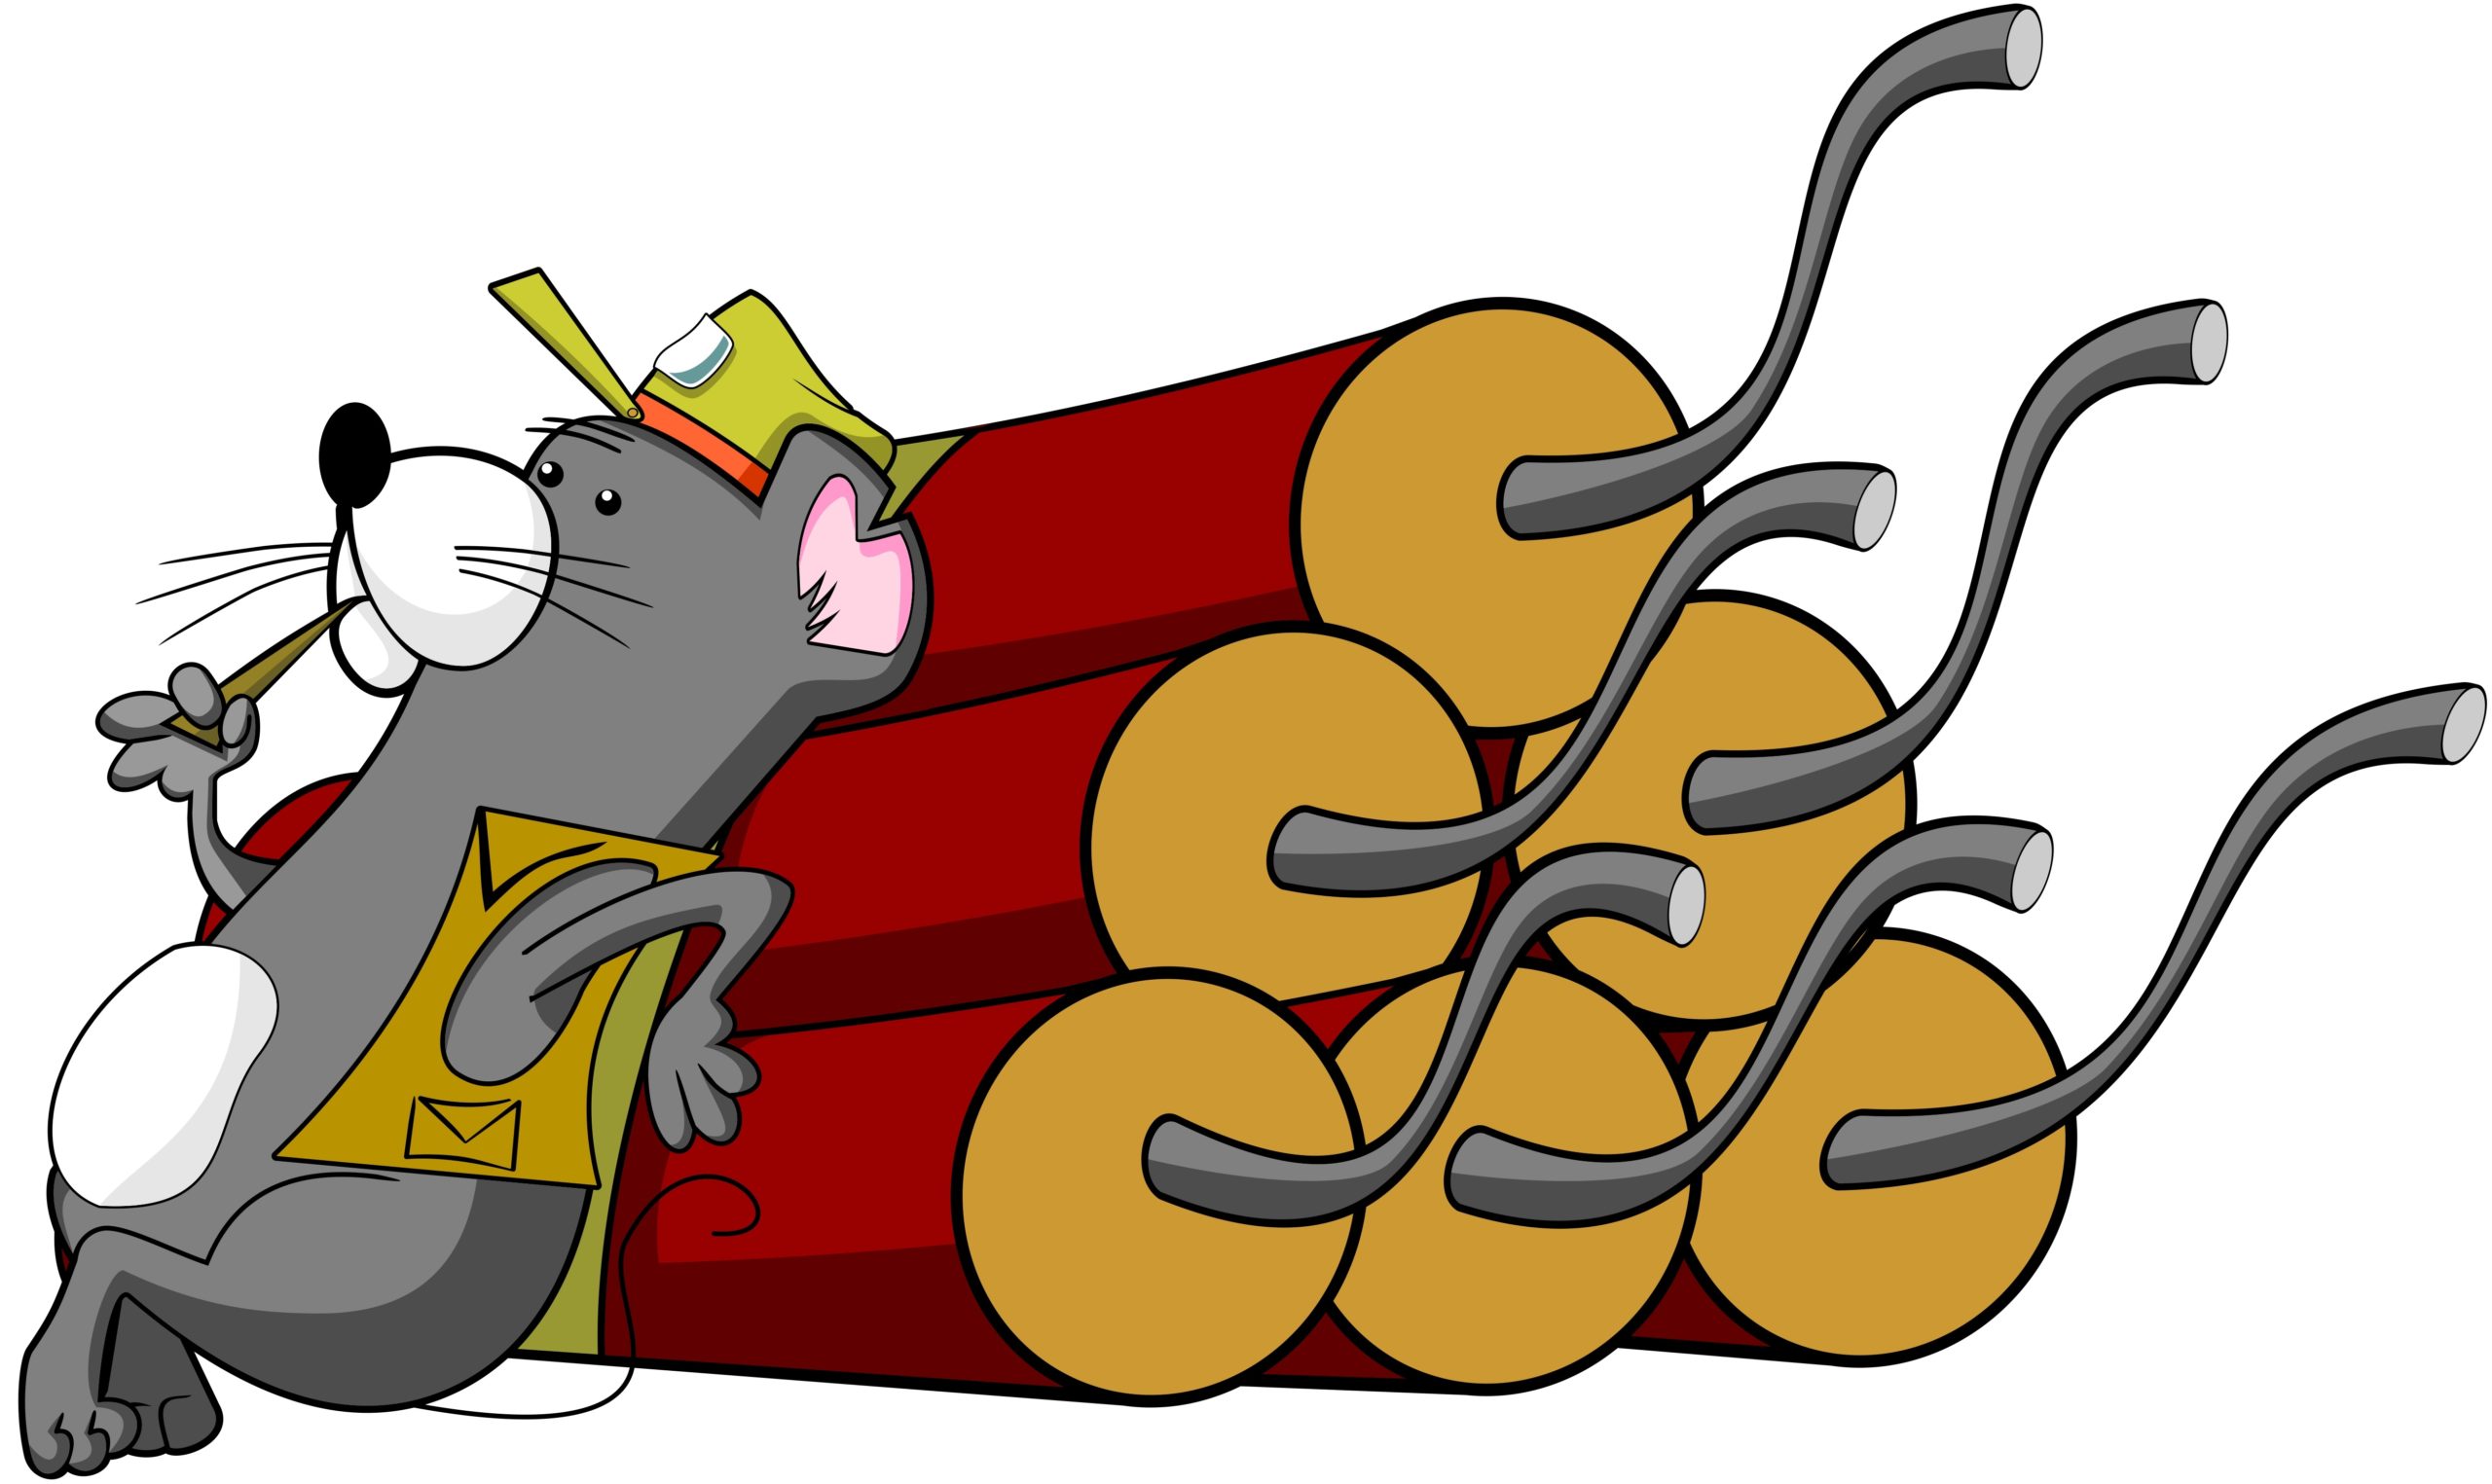 земмифобия - так называется боязнь крыс и мышей